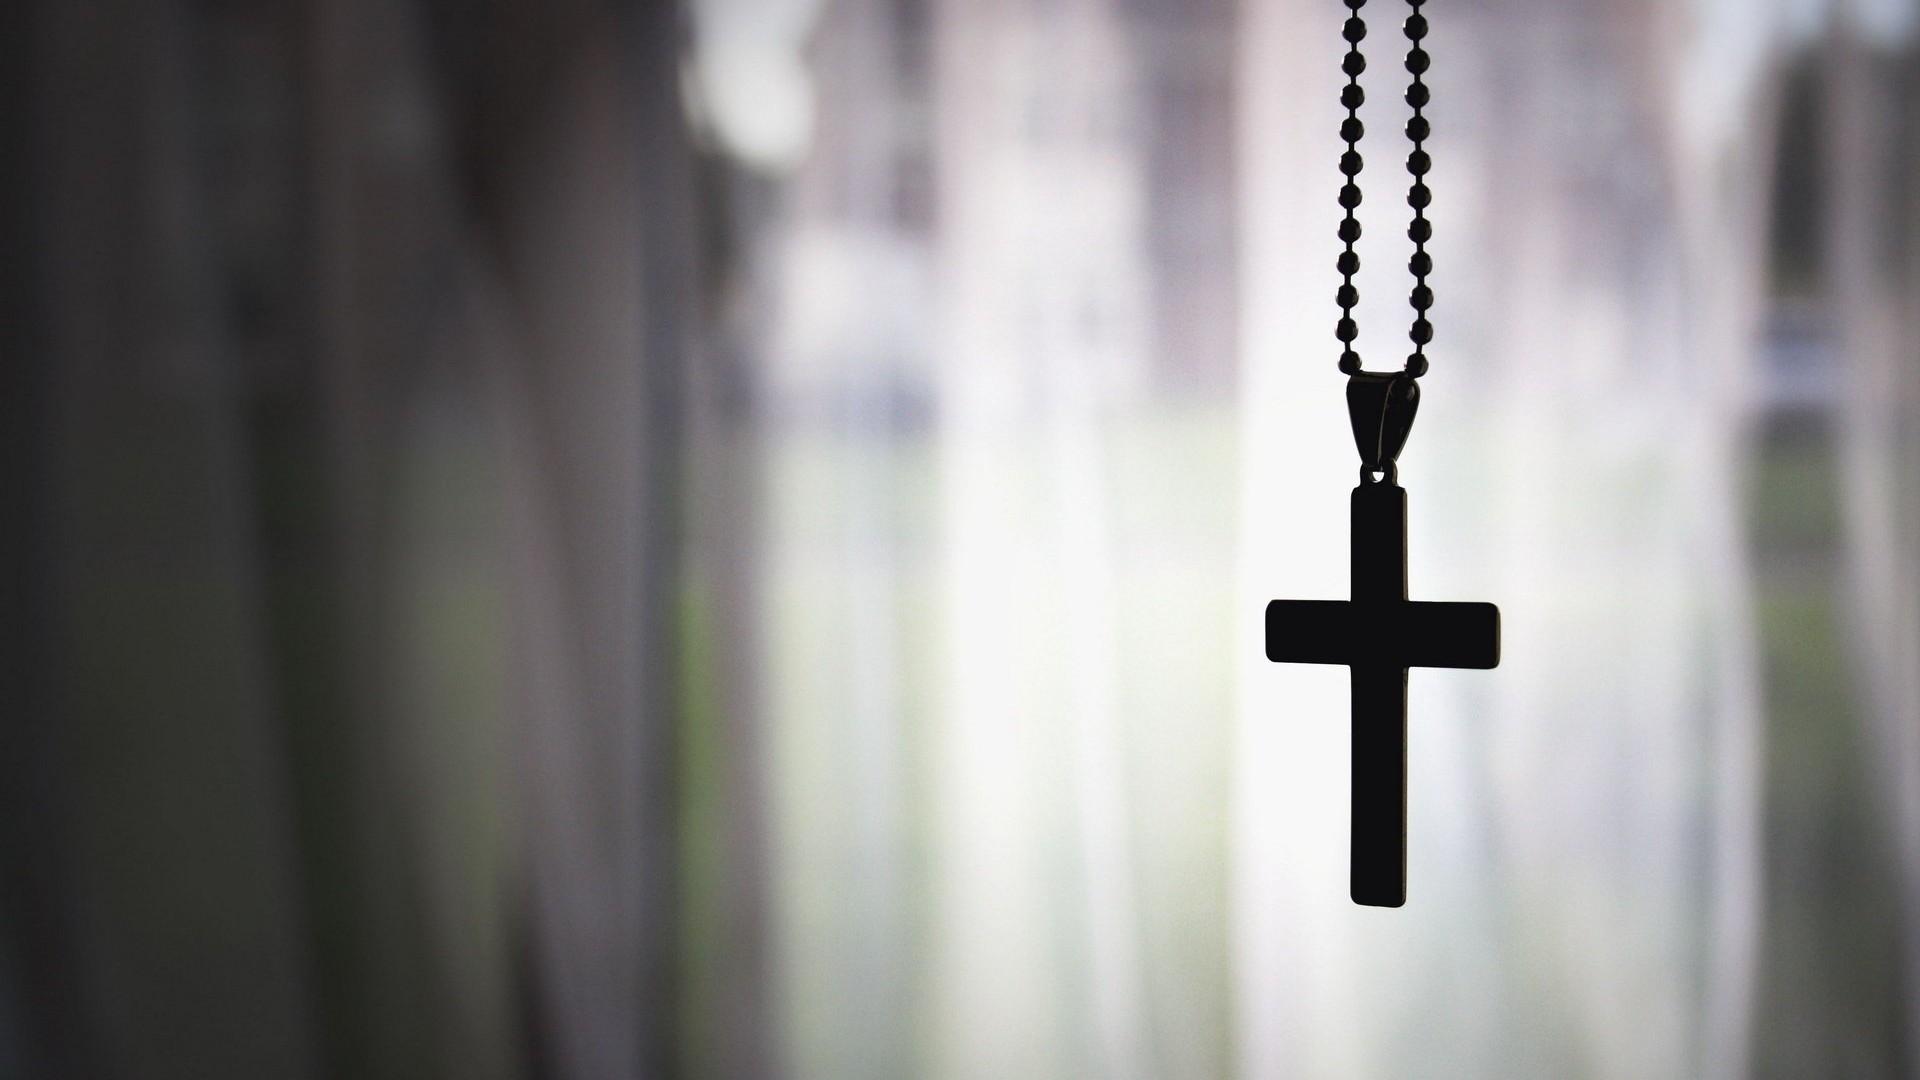 Один из сотрудников американского университета попросил свою ассистентку-католичку снять нательный крестик.